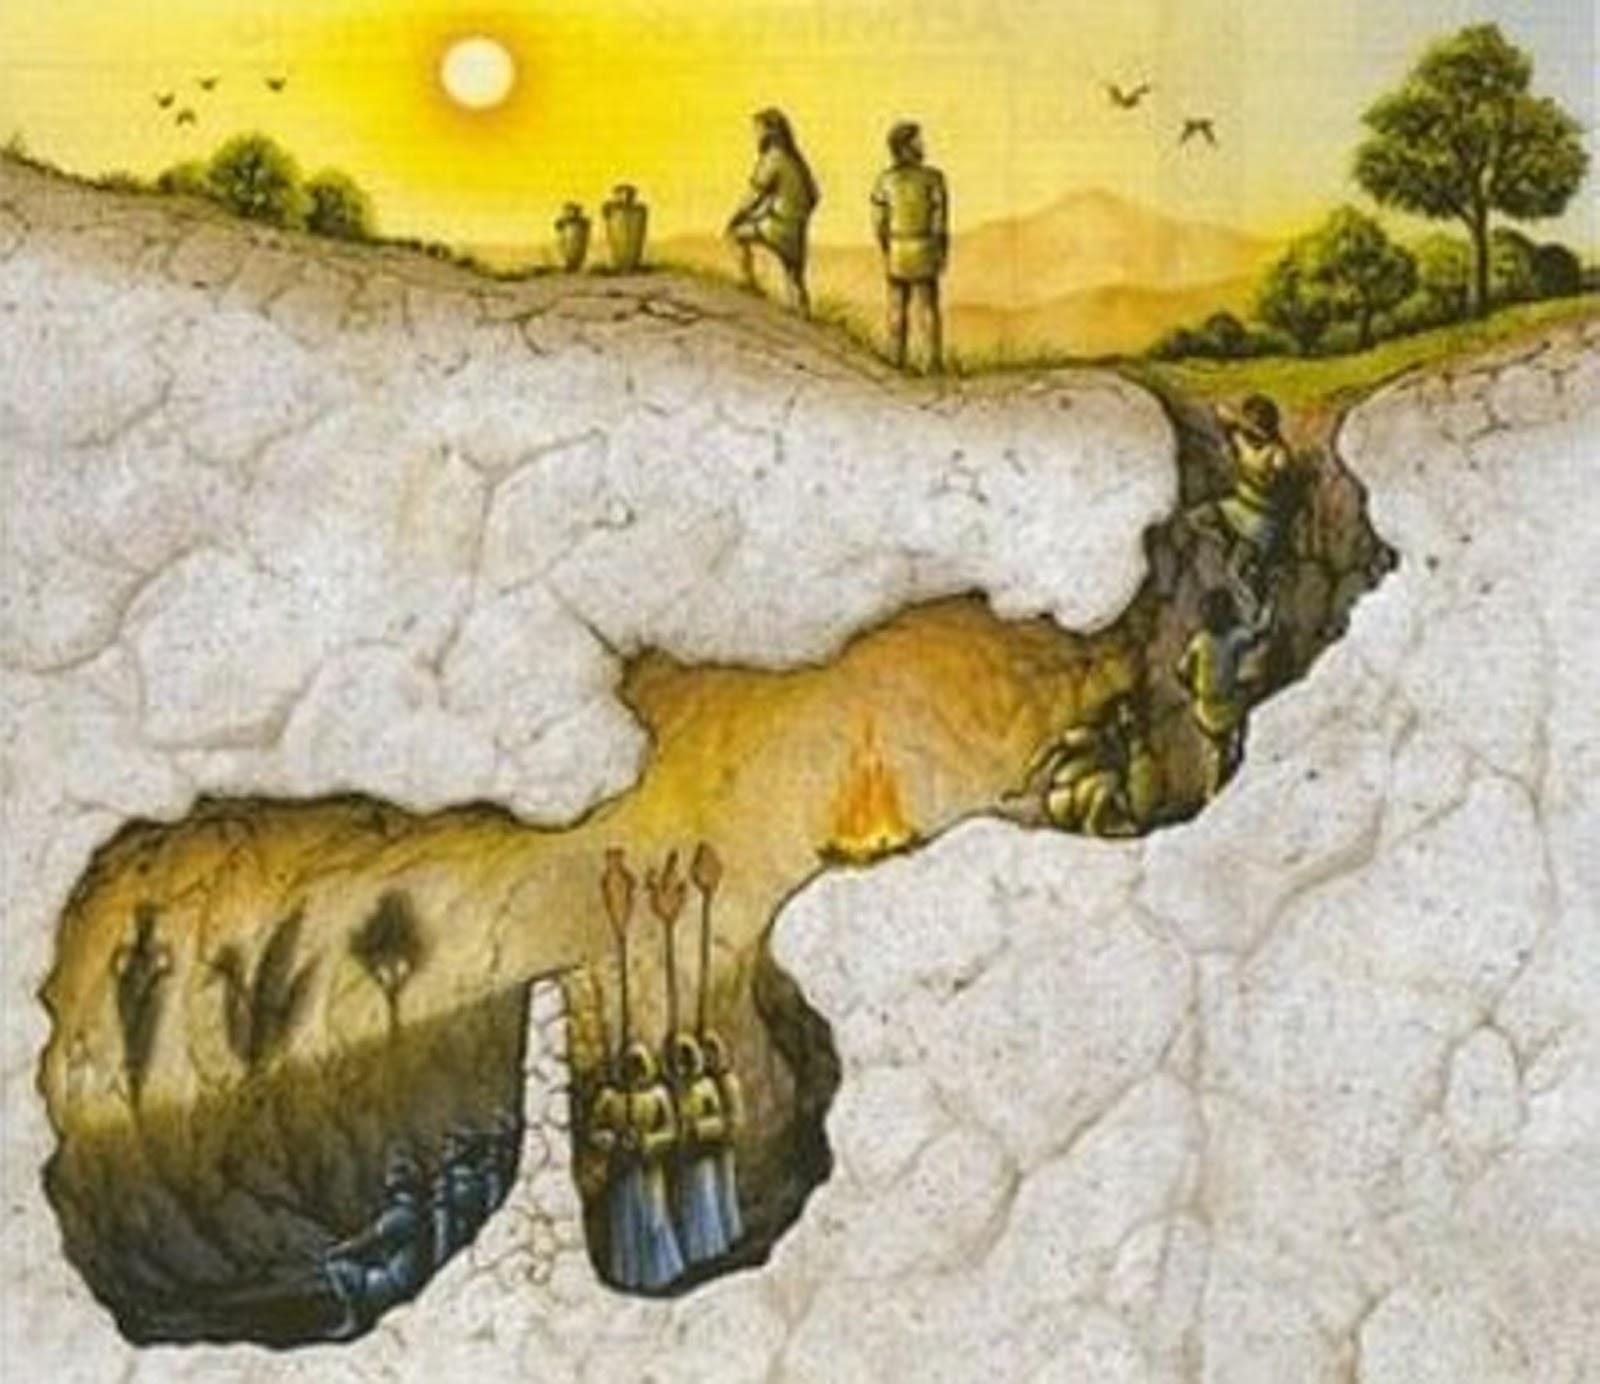 Comparação: Teoria das ideias e o Mito da Caverna Caverna = Mundo exterior = Os prisioneiros = As sombras = As correntes = O instrumento que quebra as correntes = O prisioneiro que se liberta = O